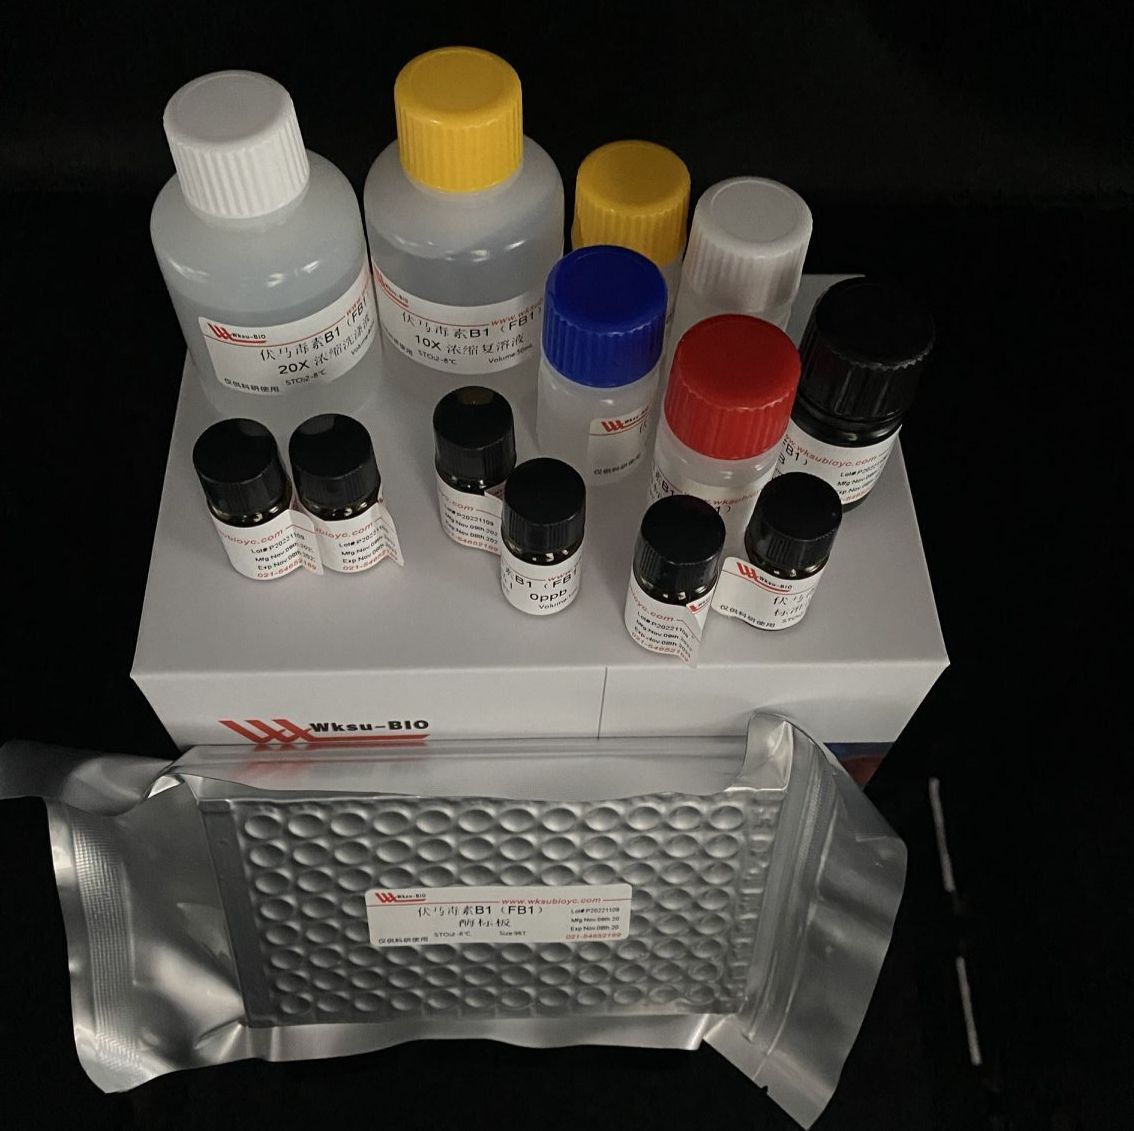 土壤脂肪酶(S-LPS)试剂盒,微板法